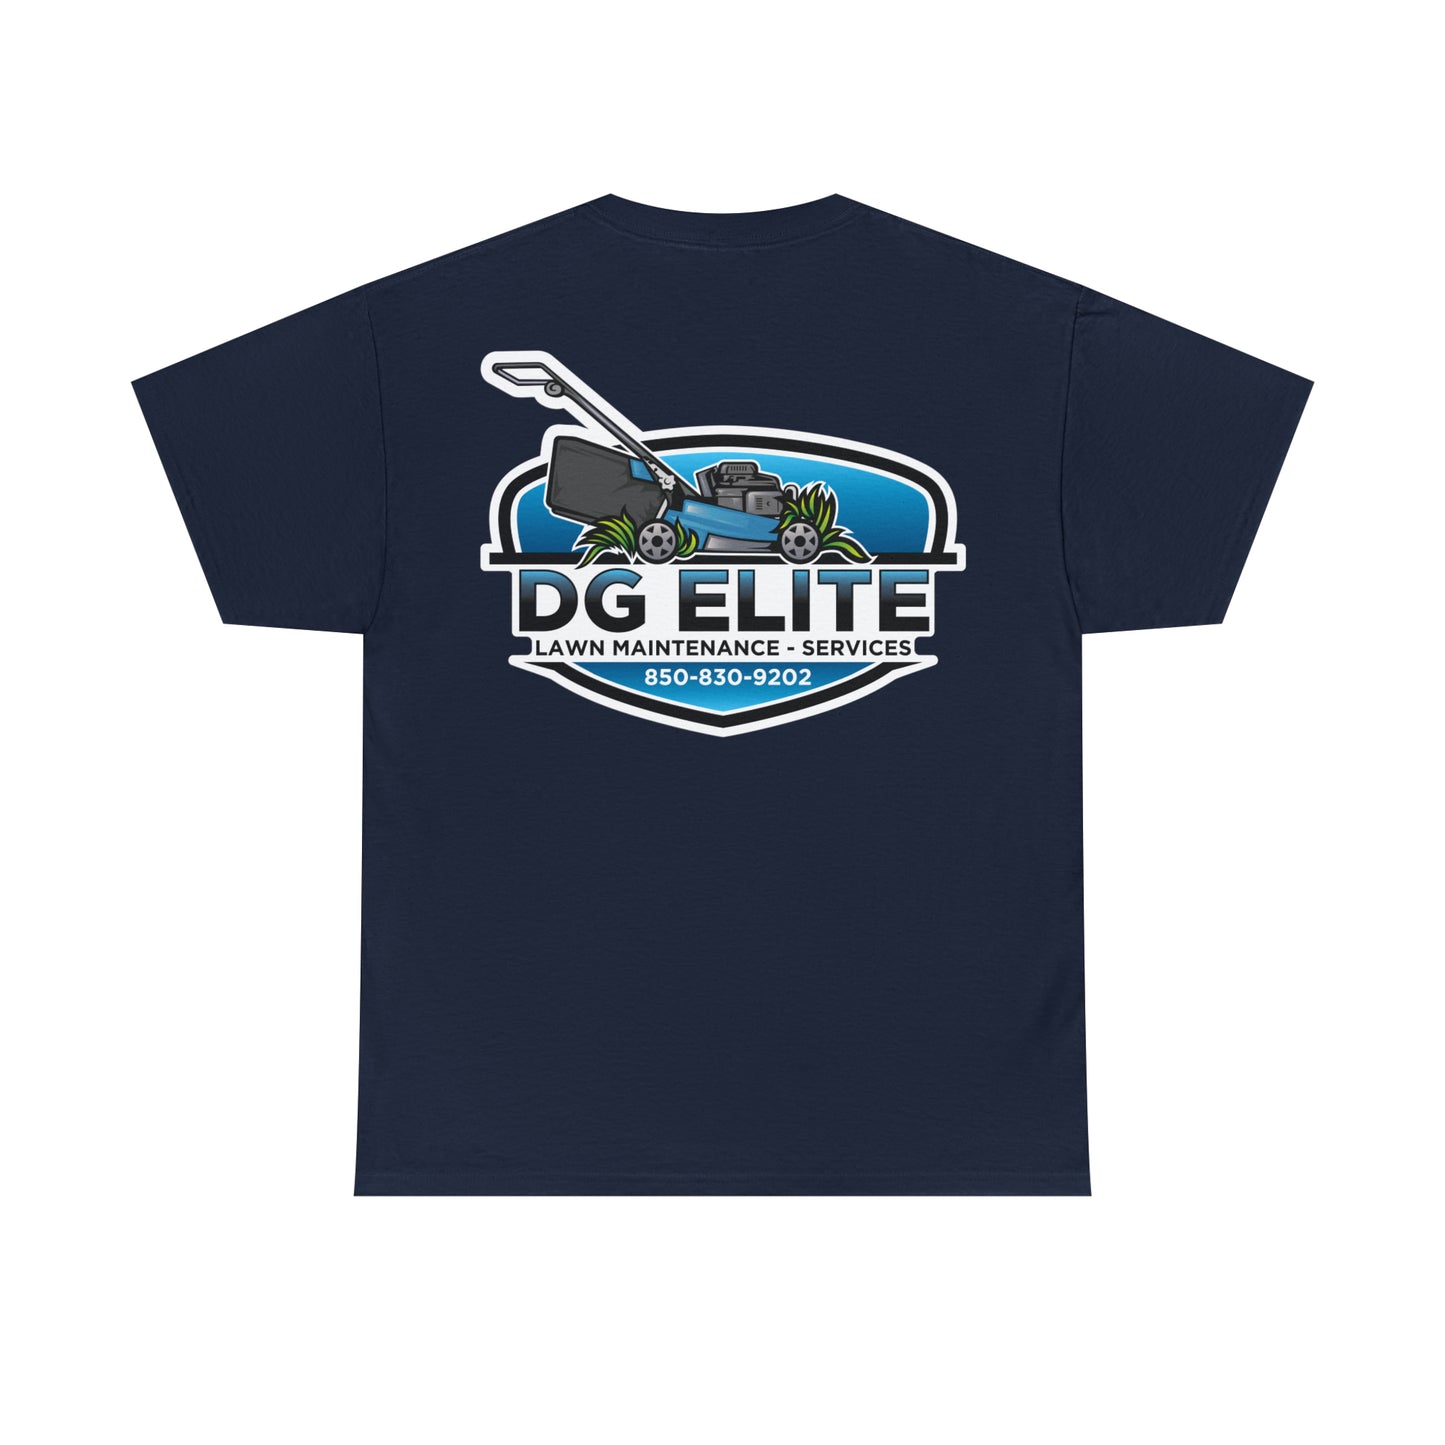 DG Elite New Logo Heavy Cotton Tee